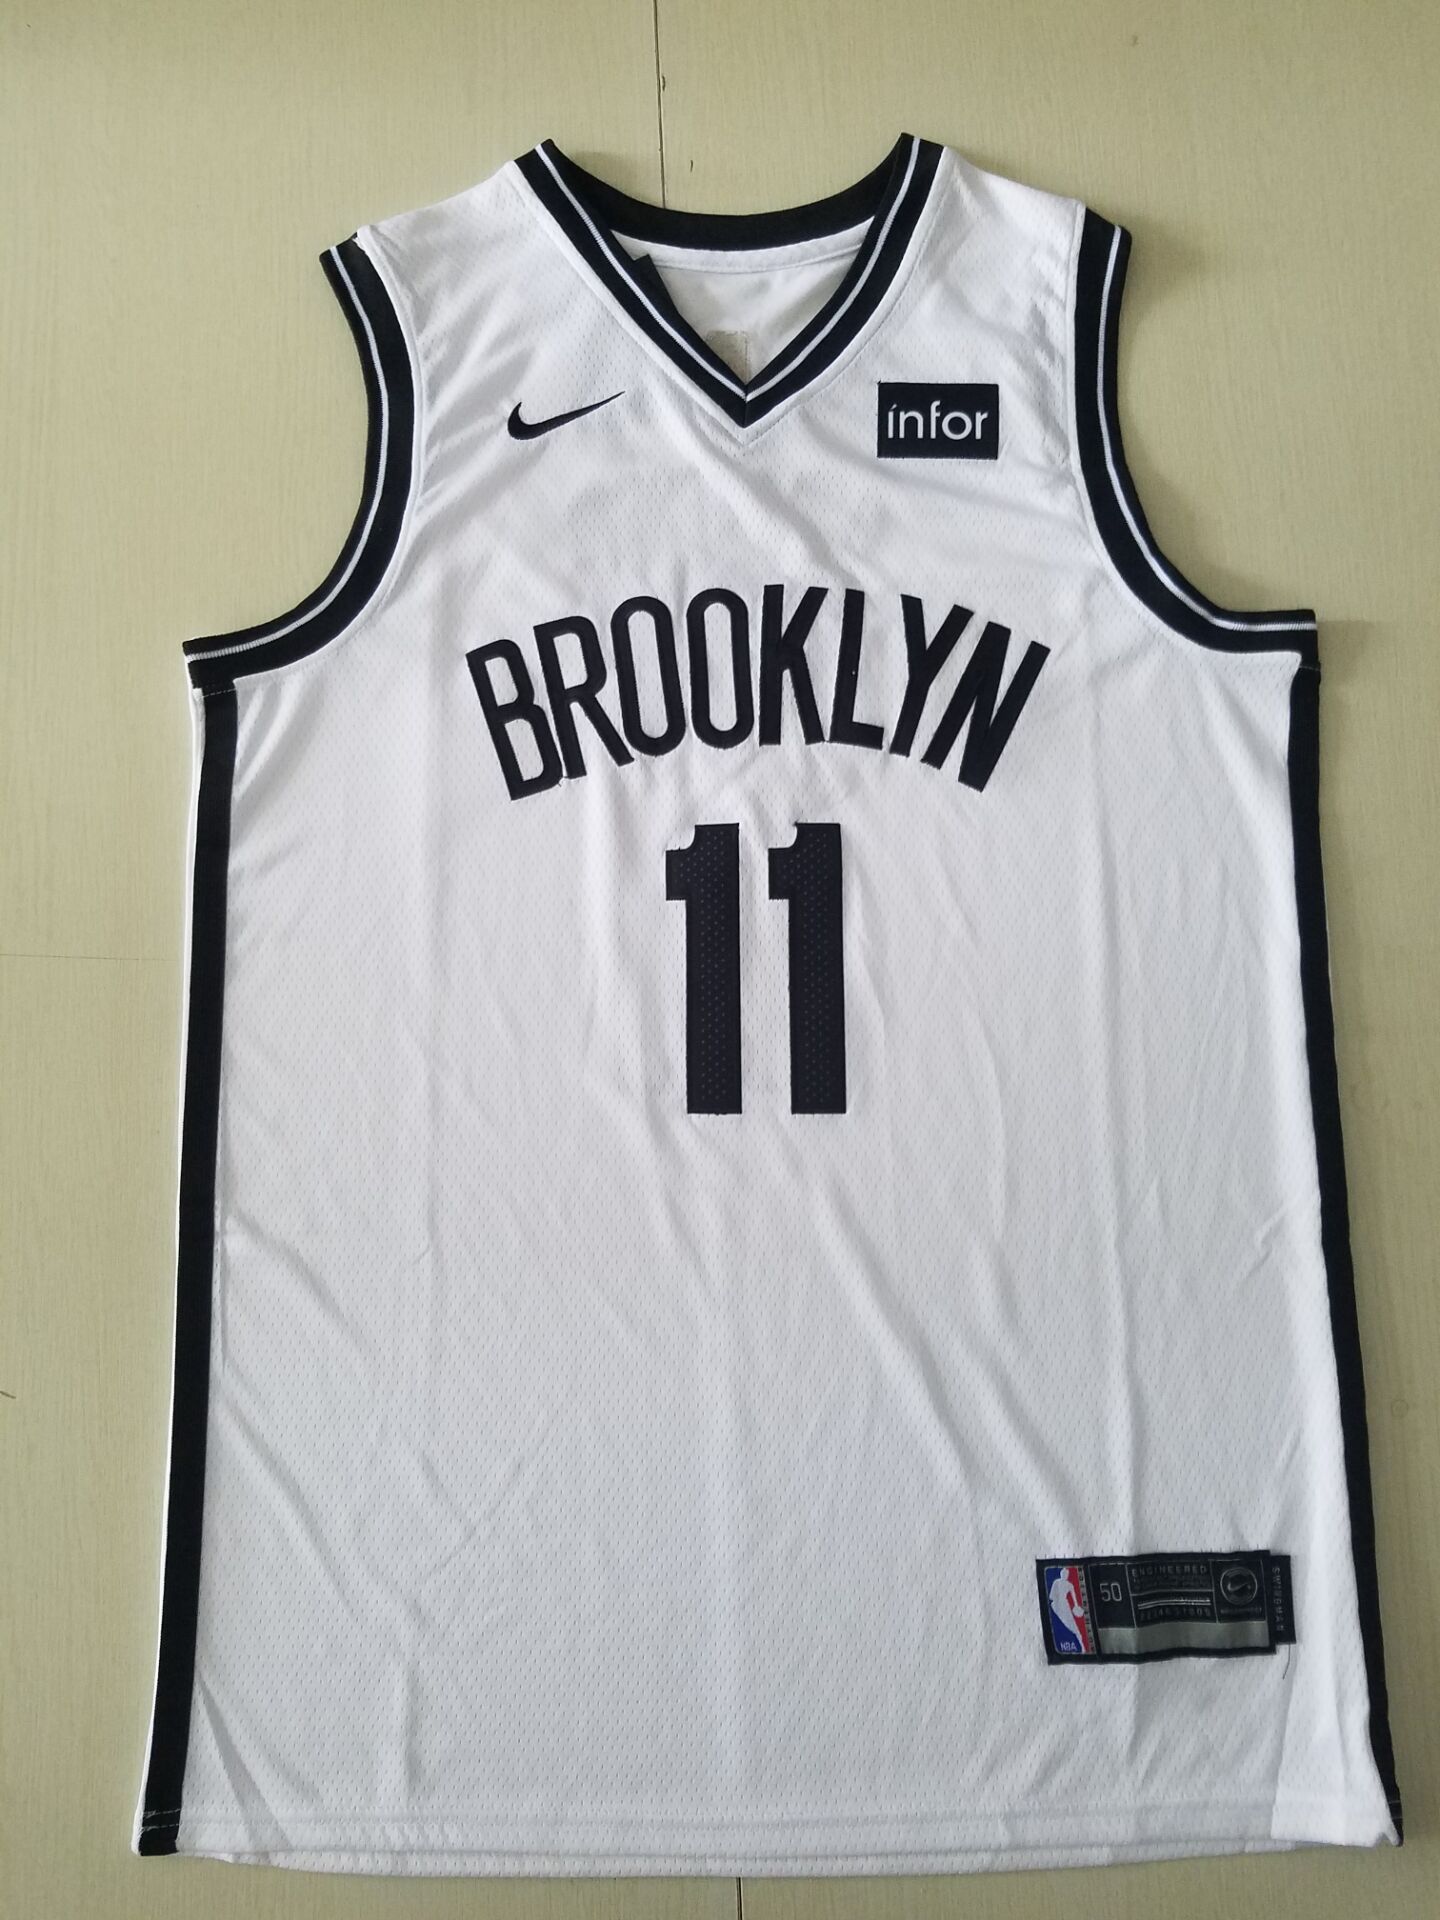 Youth Brooklyn Nets #11 Irving White Nike Game NBA Jerseys->youth nba jersey->Youth Jersey